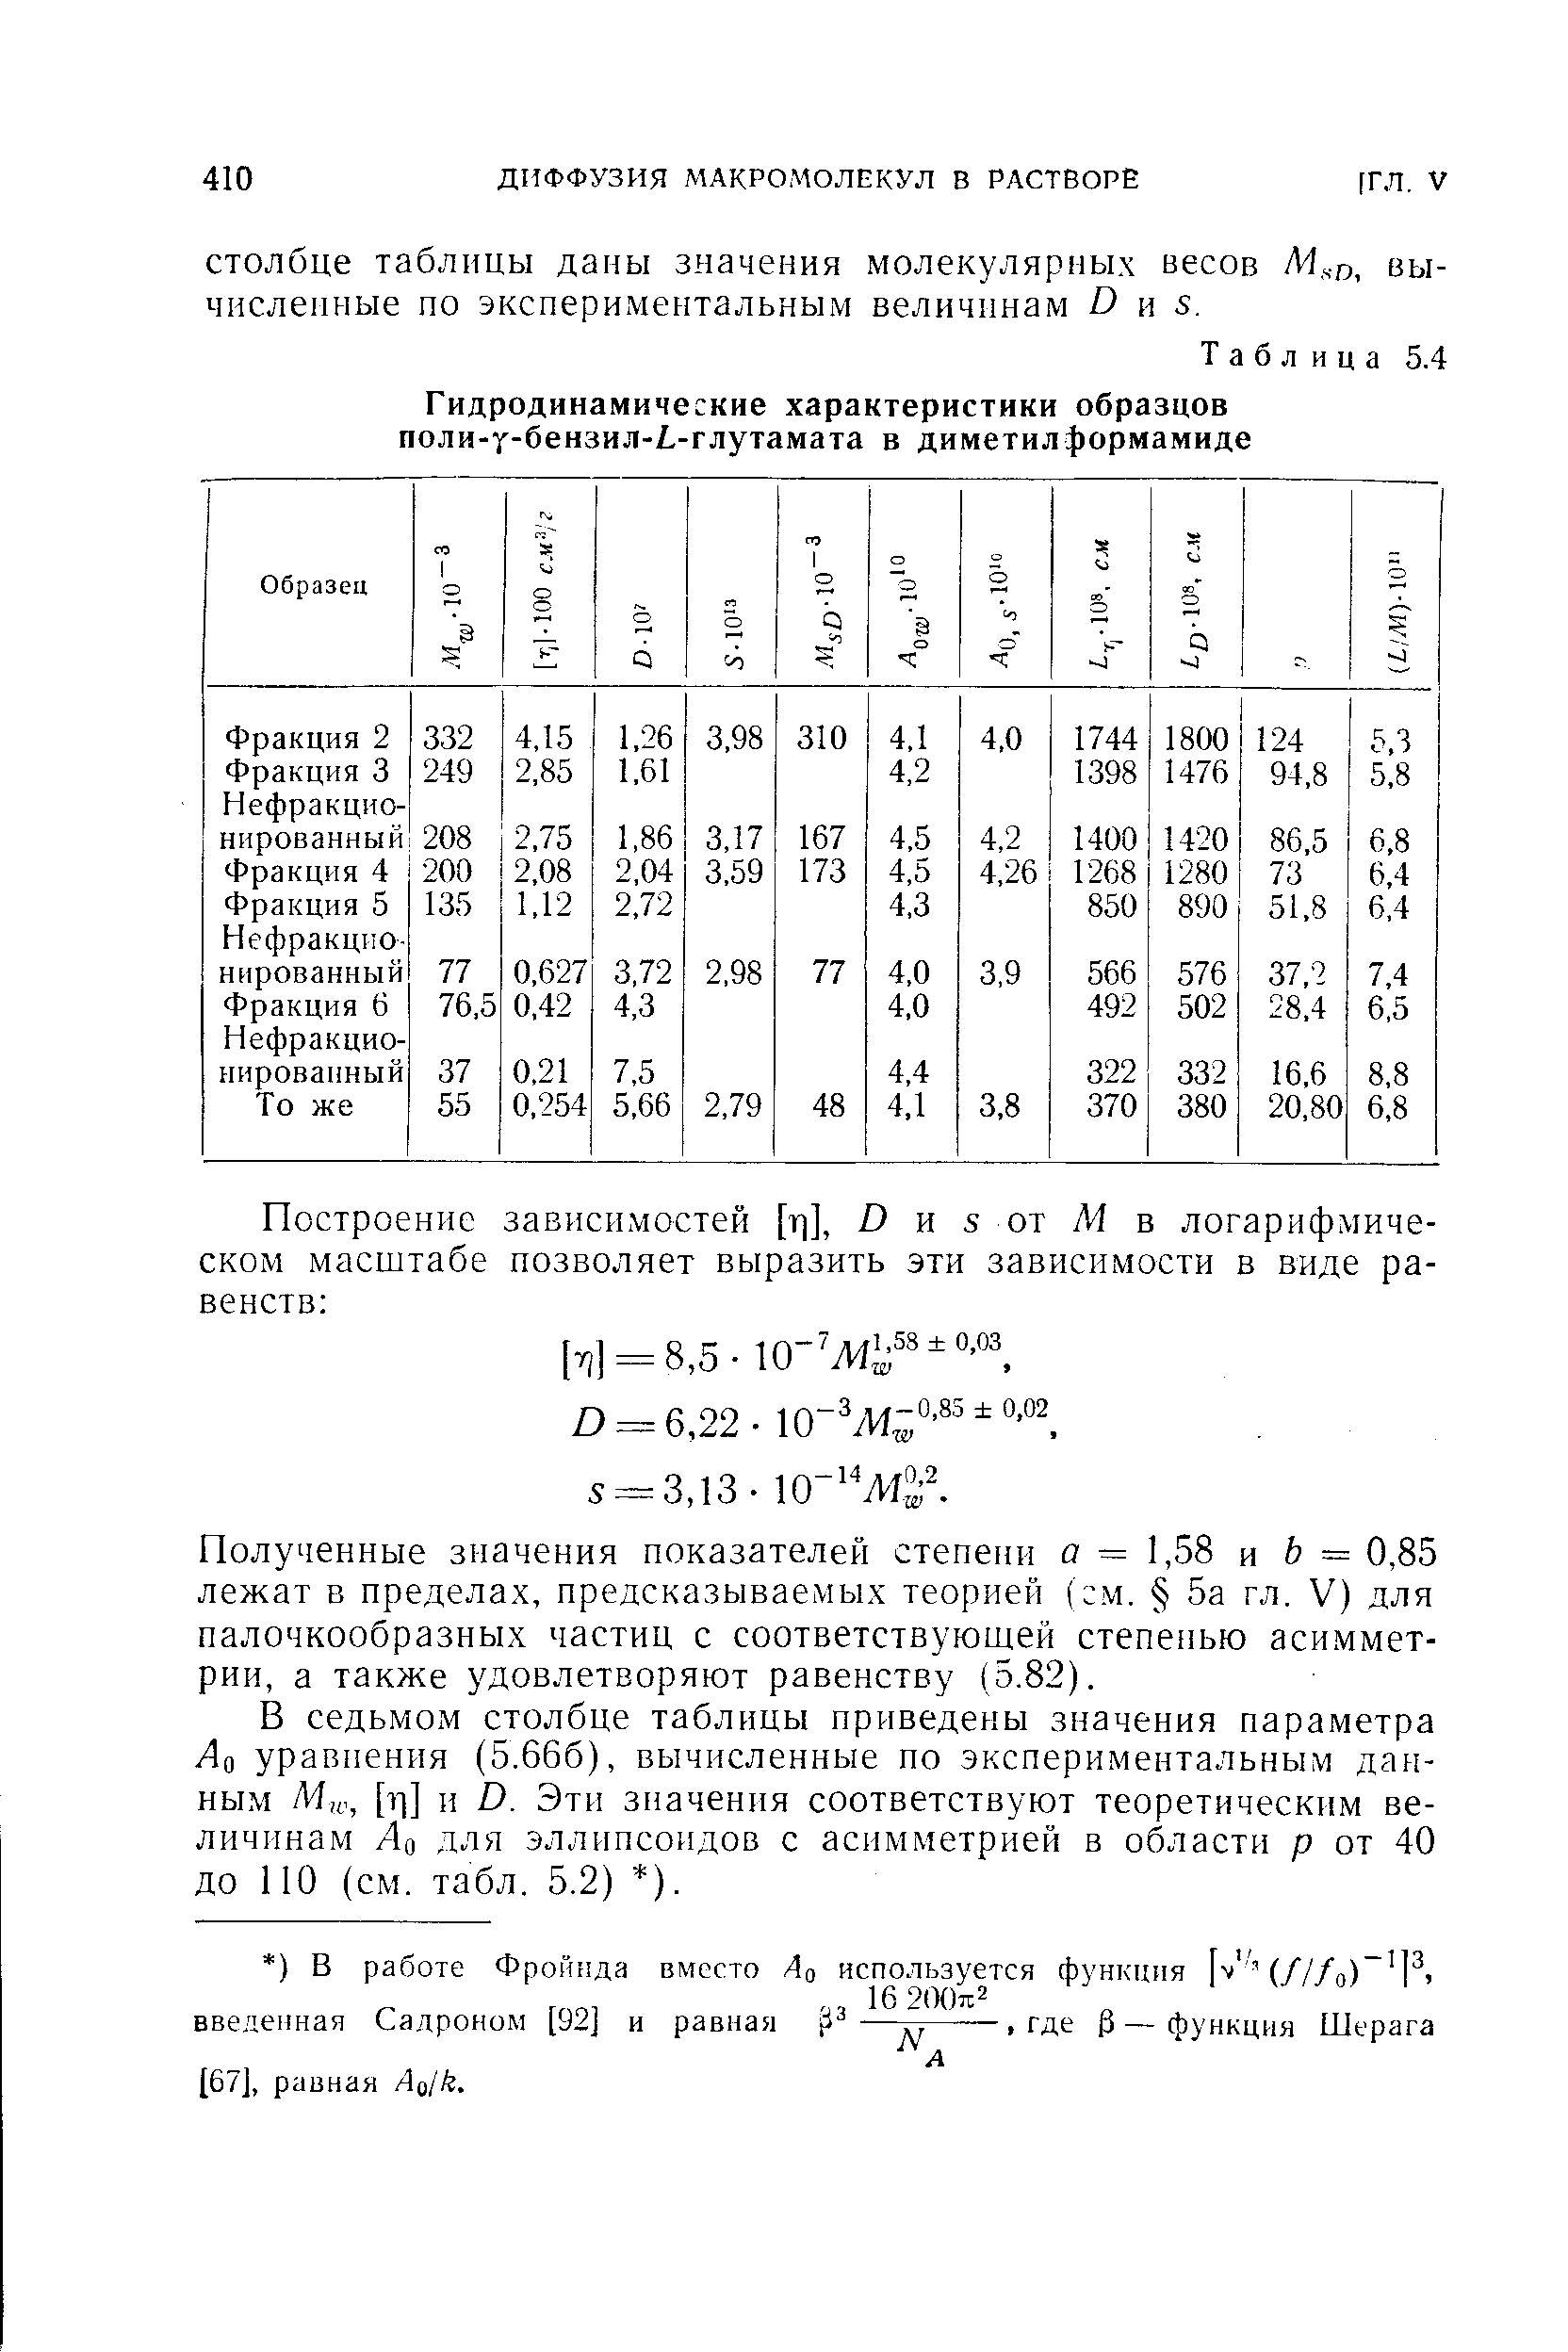 Полученные значения показателей степени о = 1,58 и Ь = 0,85 лежат в пределах, предсказываемых теорией ( м. 5а гл. V) для палочкообразных частиц с соответствующей степенью асимметрии, а также удовлетворяют равенству (5.82).